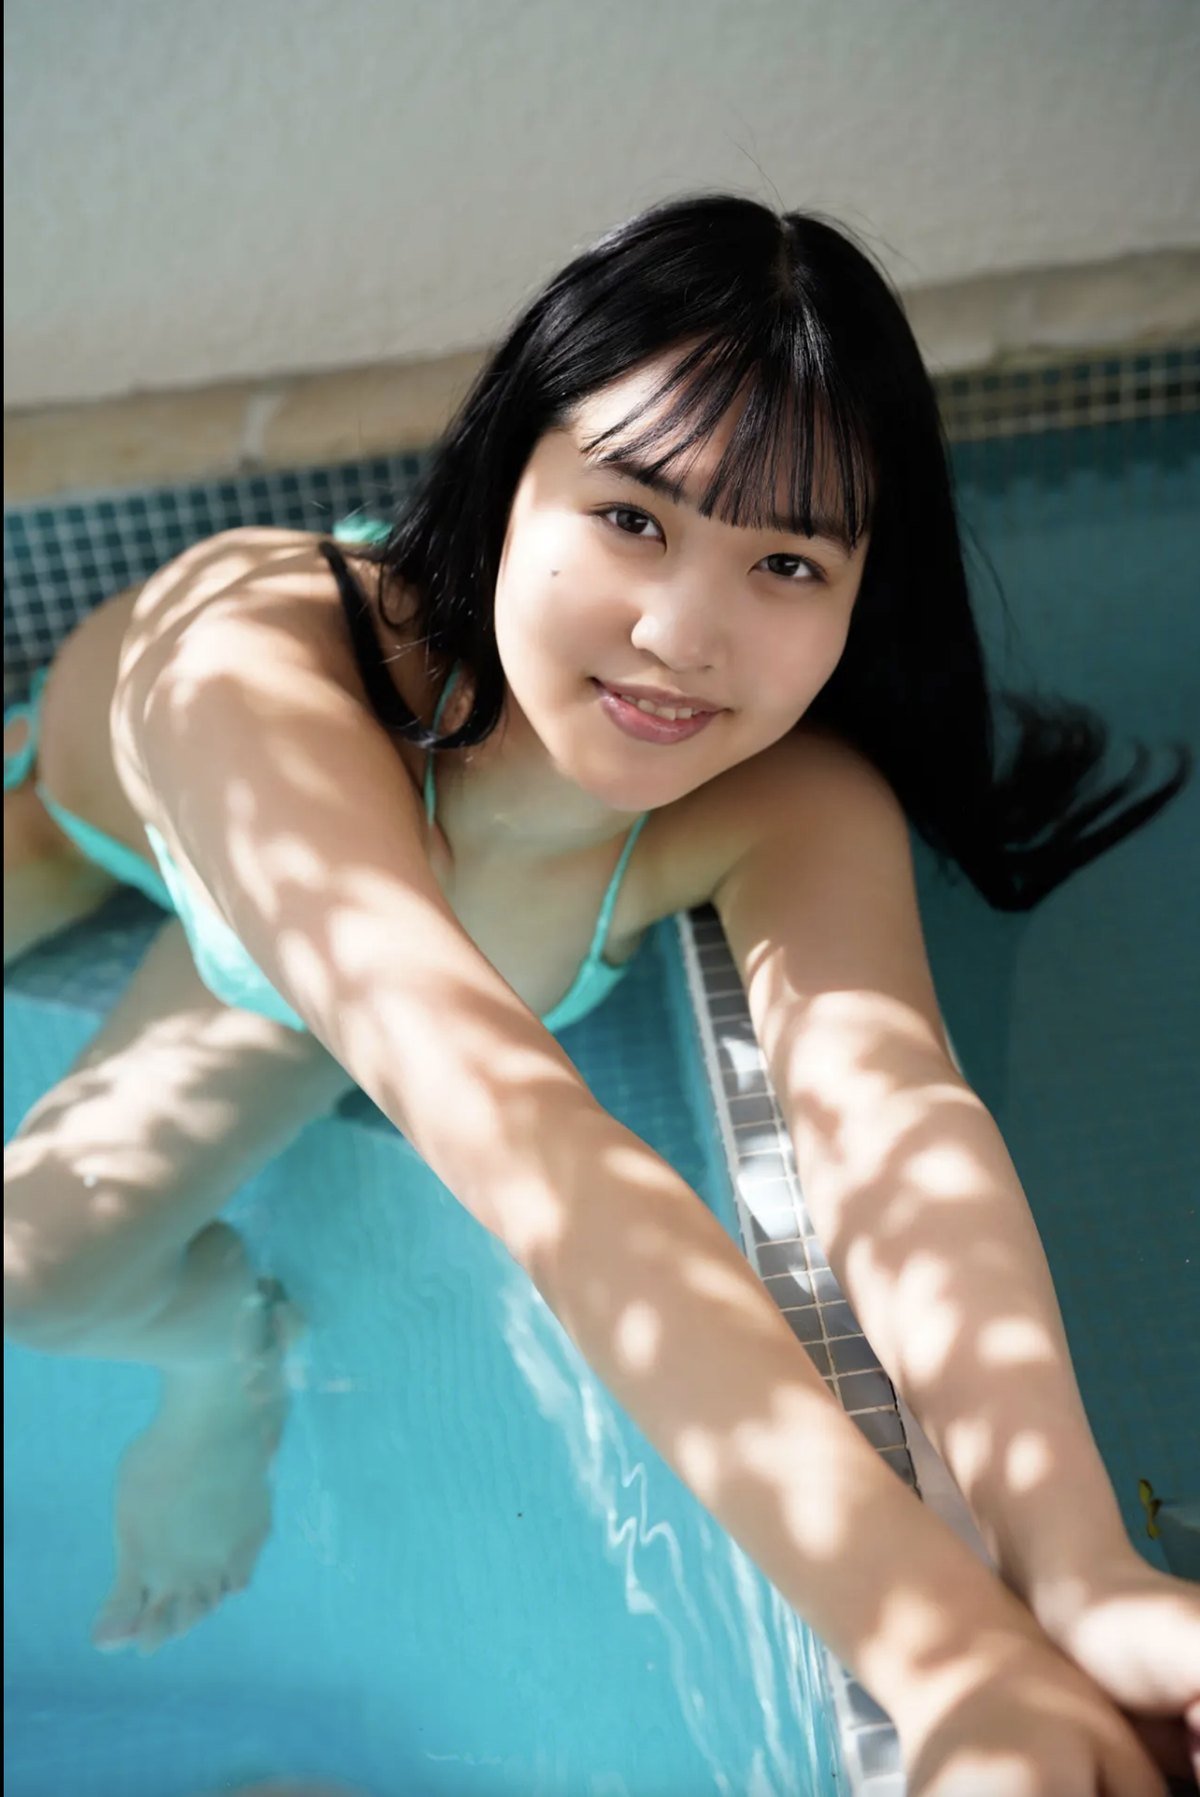 FRIDAYデジタル写真集 Miyuka Minami 南みゆか Bikini Cinderella Full Version 0037 3965248874.jpg